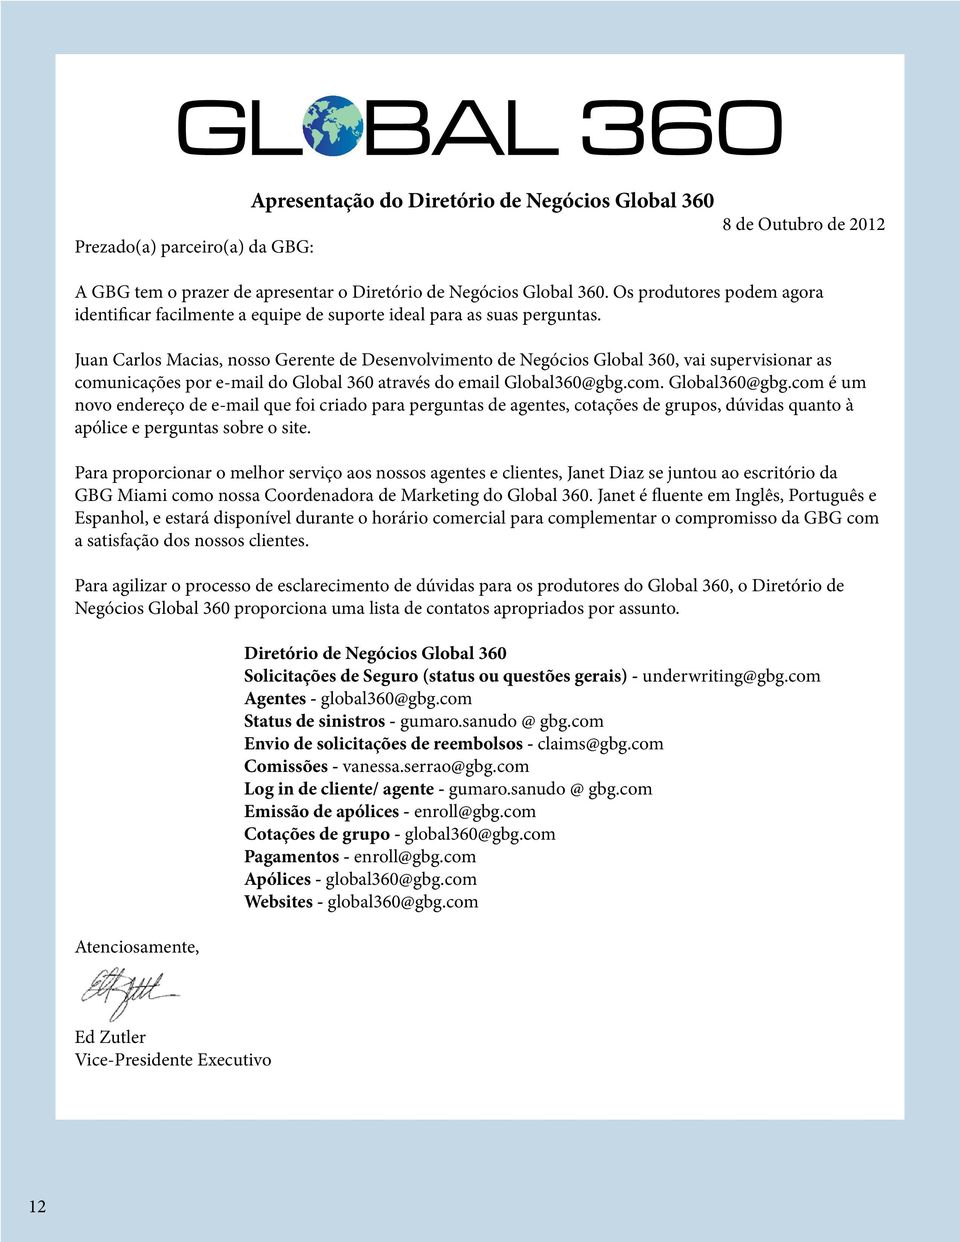 Juan Carlos Macias, nosso Gerente de Desenvolvimento de Negócios Global 360, vai supervisionar as comunicações por e-mail do Global 360 através do email Global360@gbg.